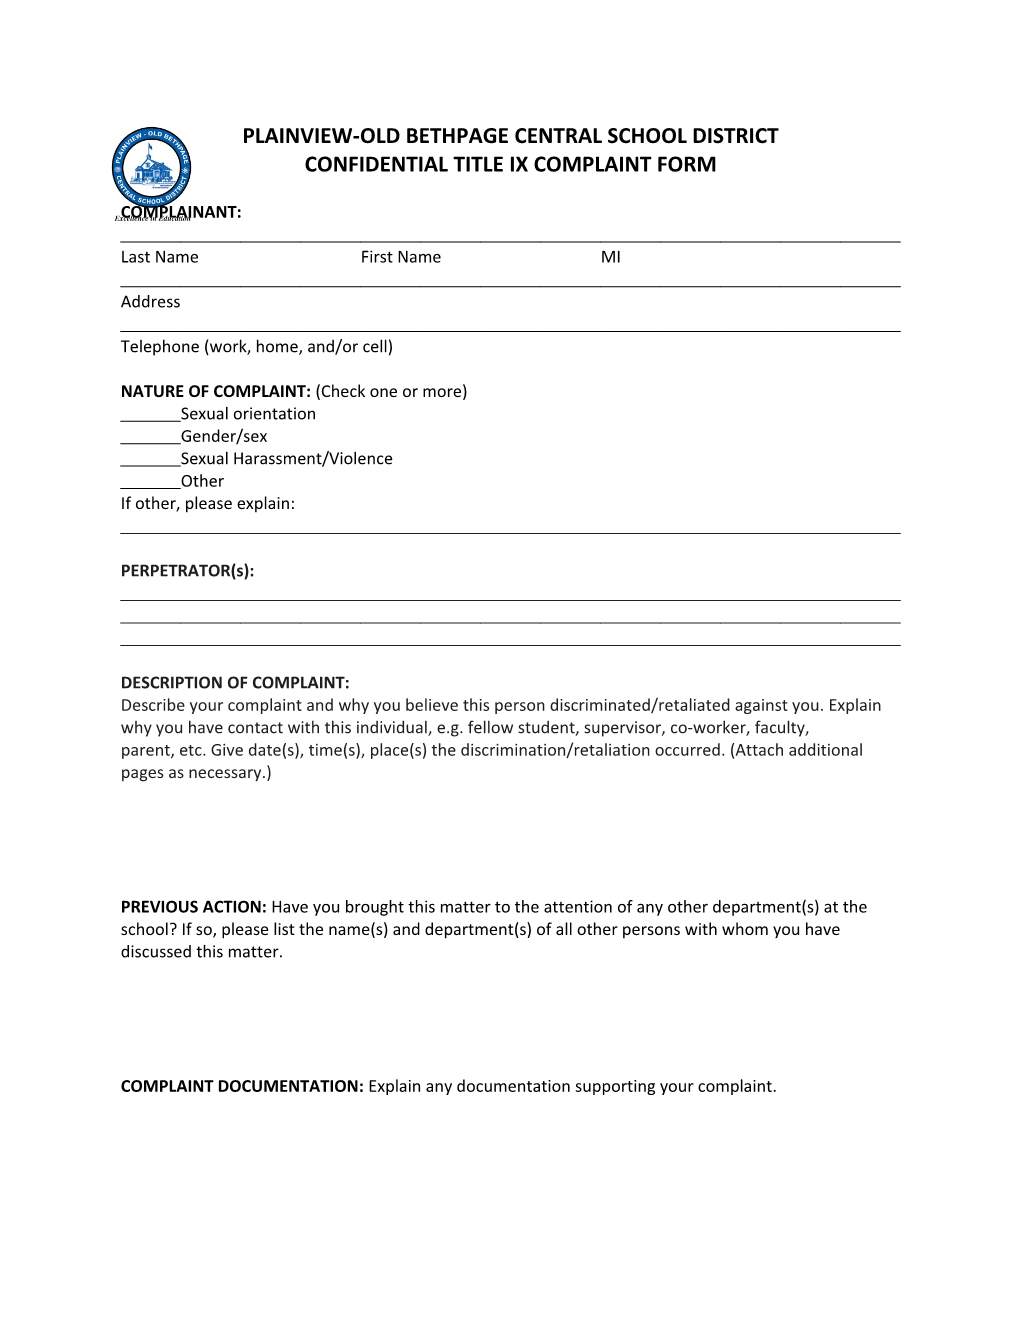 Confidential Title Ix Complaint Form